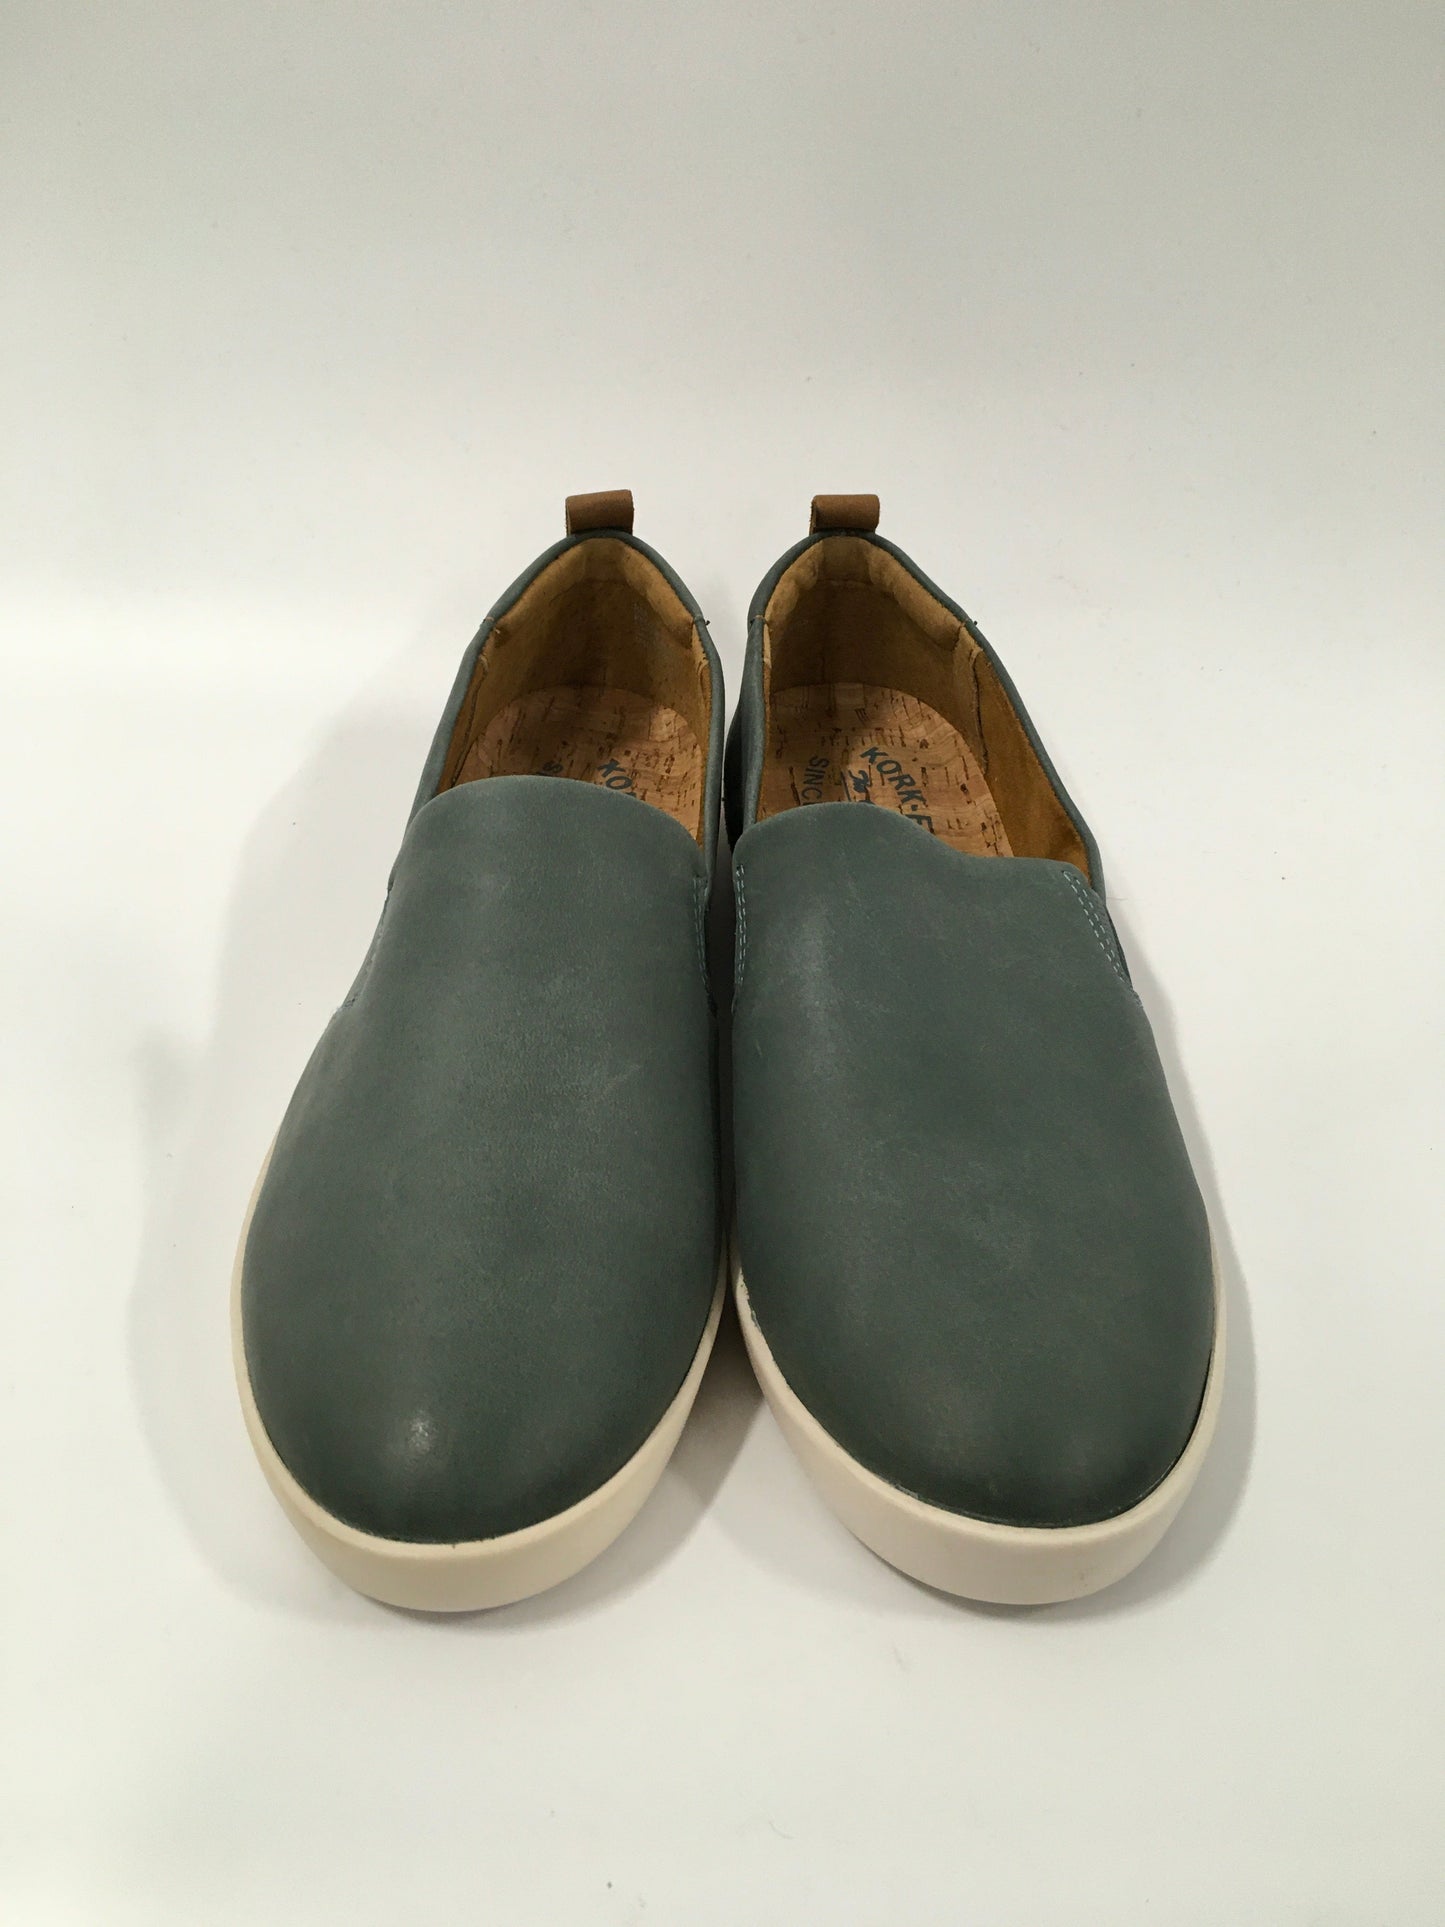 Aqua Shoes Flats Kork Ease, Size 8